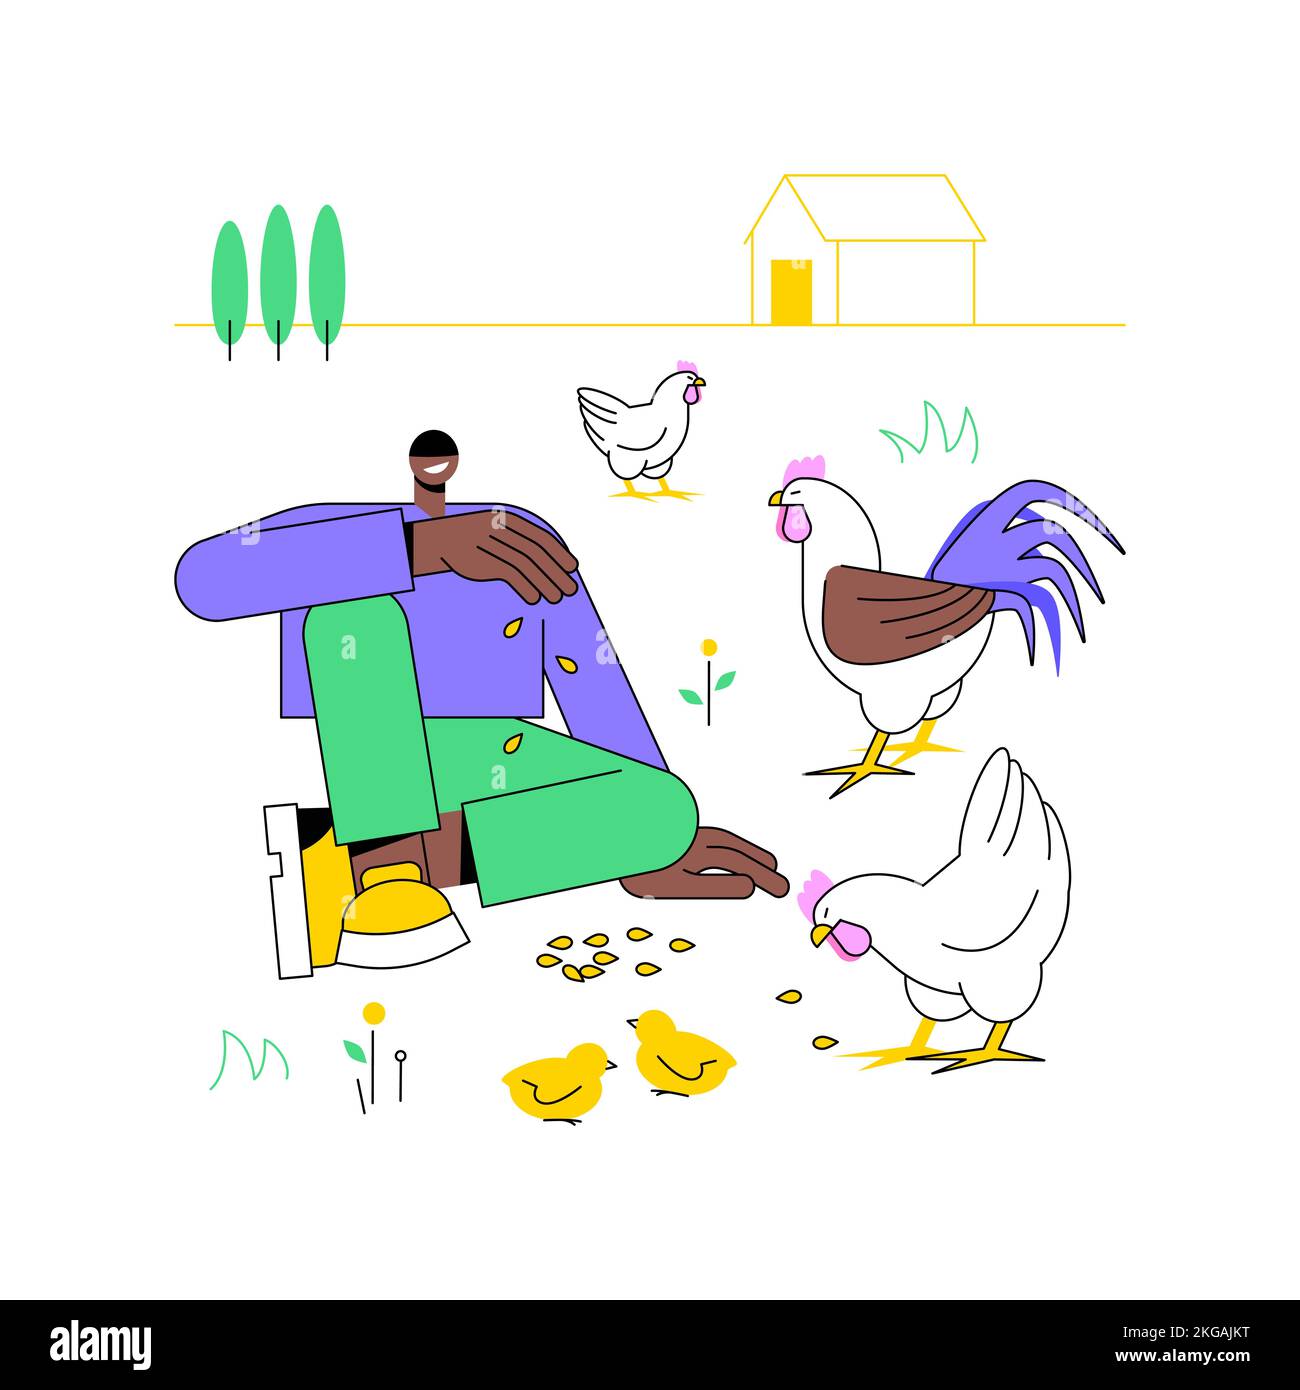 Animali senza gabbia viventi illustrazioni vettoriali isolate di cartoni animati. Agricoltore con polli sul campo, agricoltura moderna, agricoltura biologica, allevamento di pollame, attività ranch cartoni animati vettoriali. Illustrazione Vettoriale